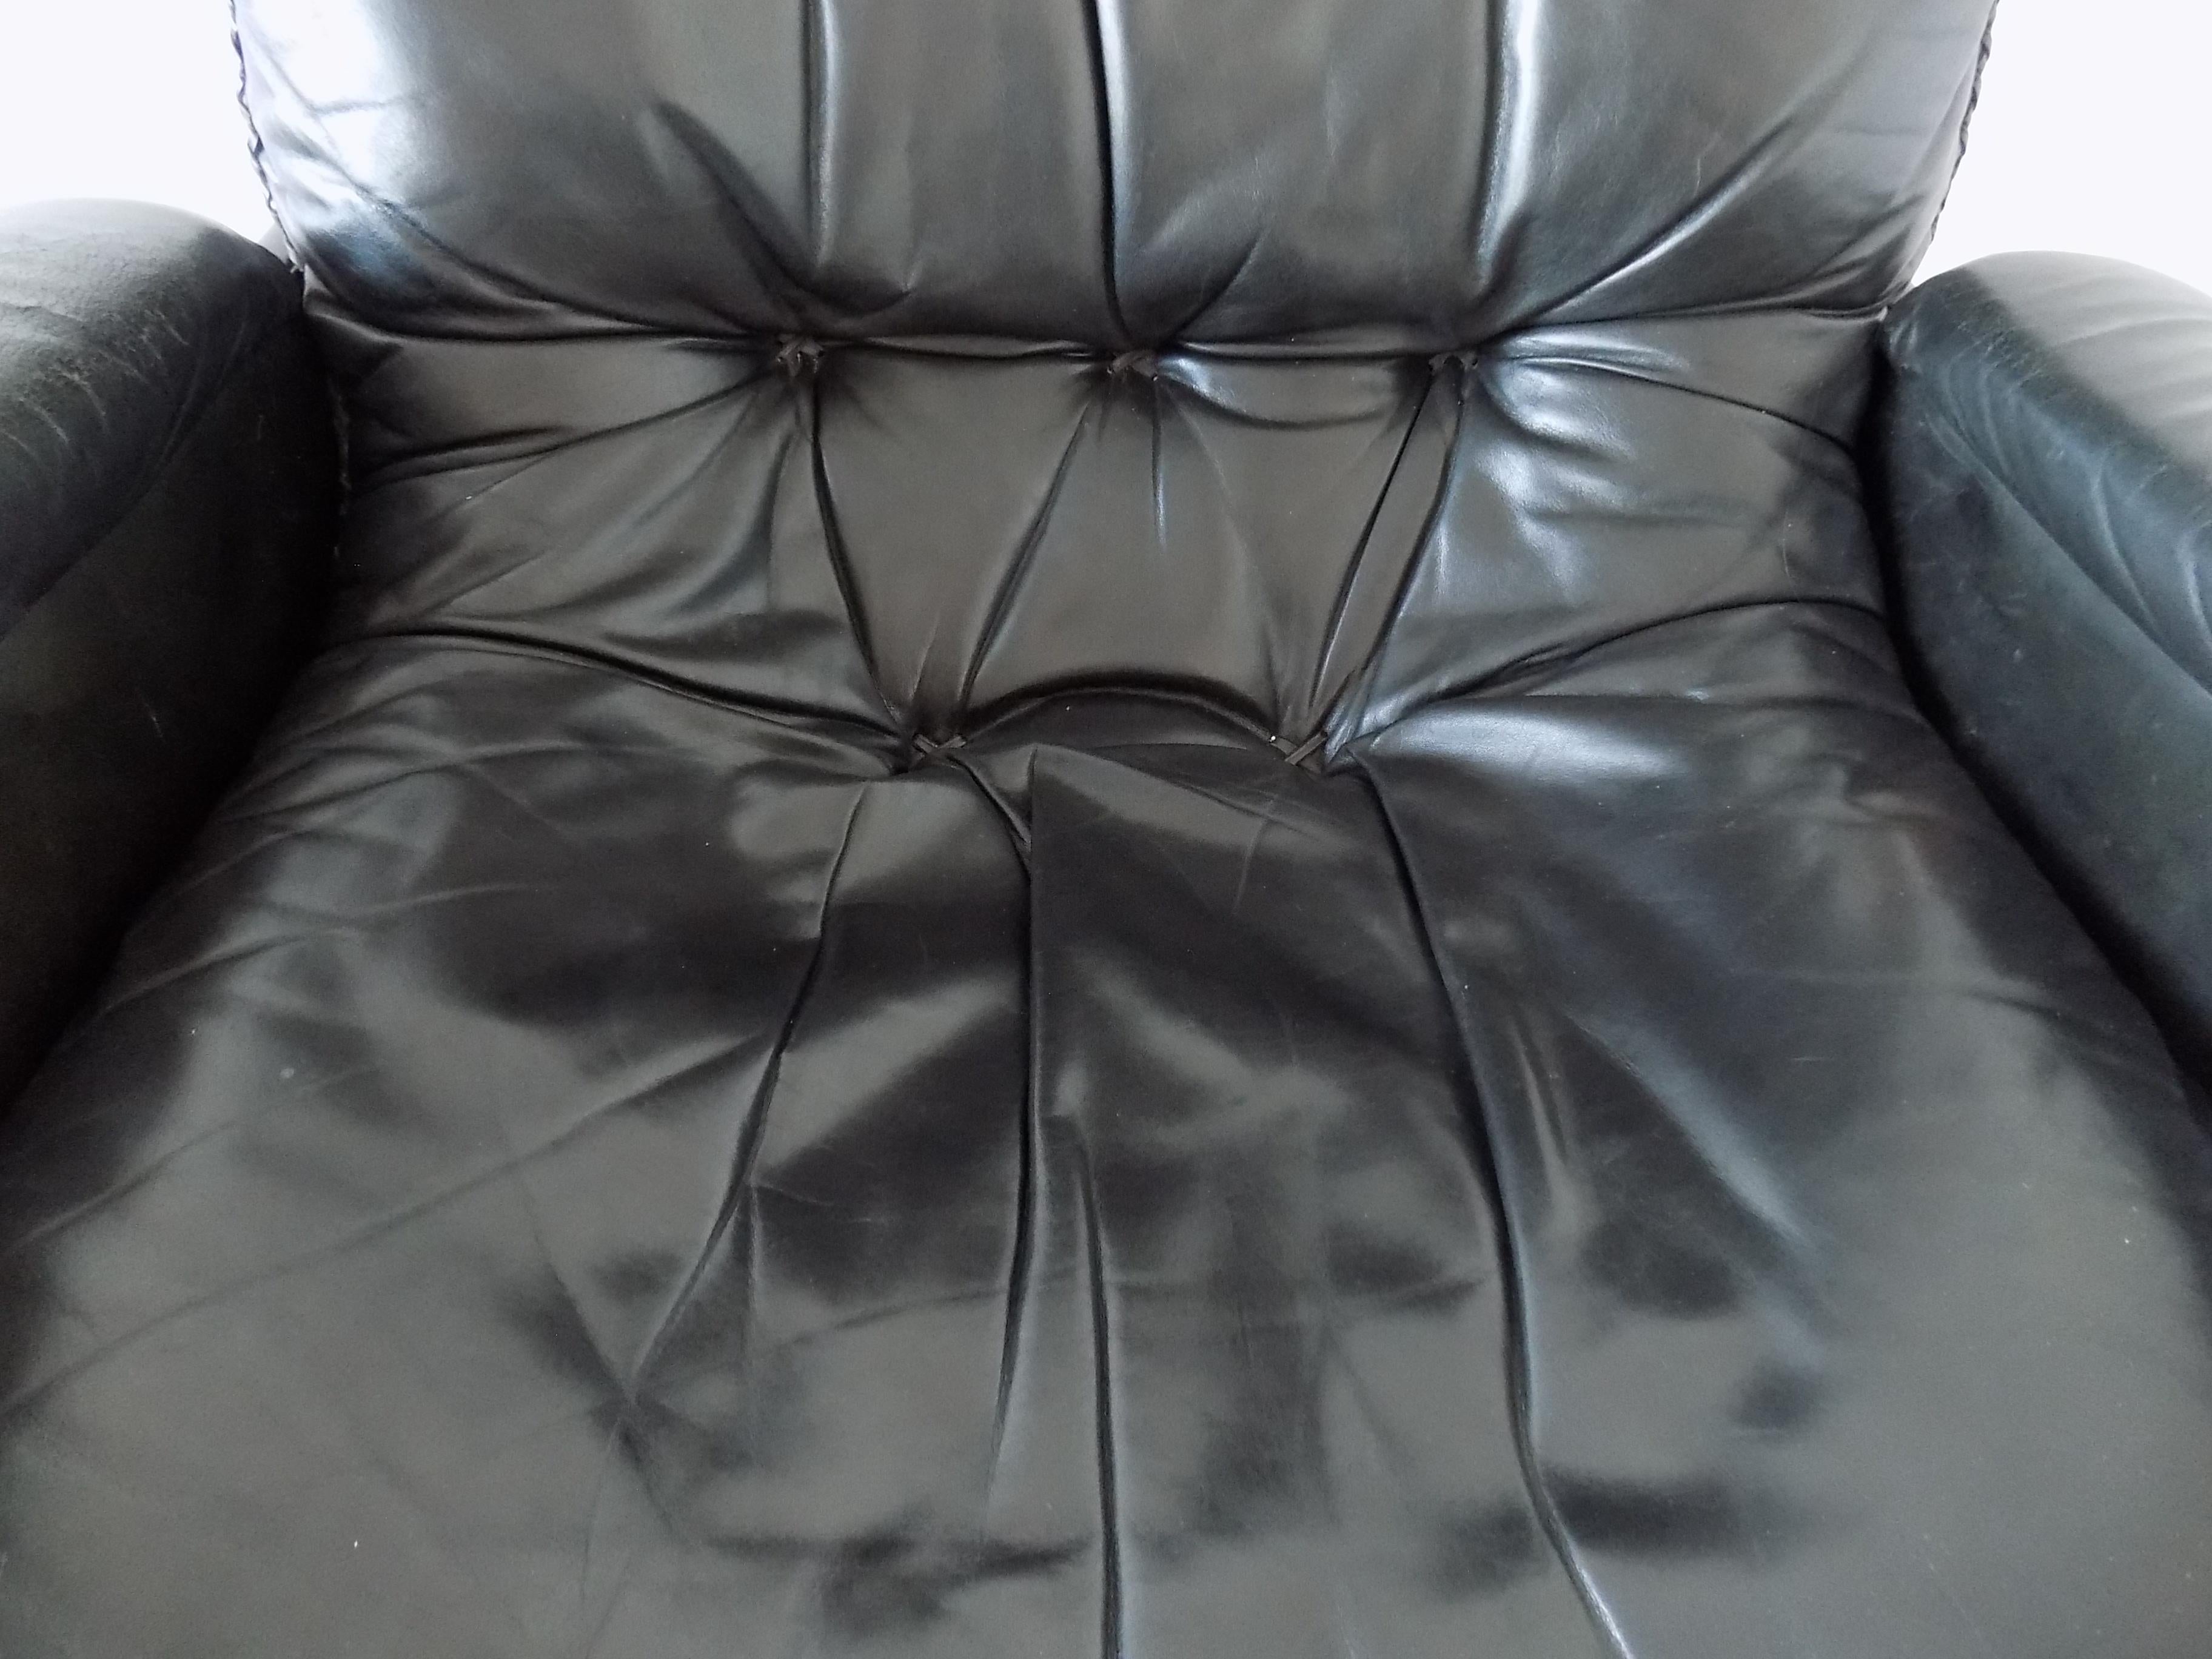 De Sede S 231 The James Bond Chair Black Leather 4